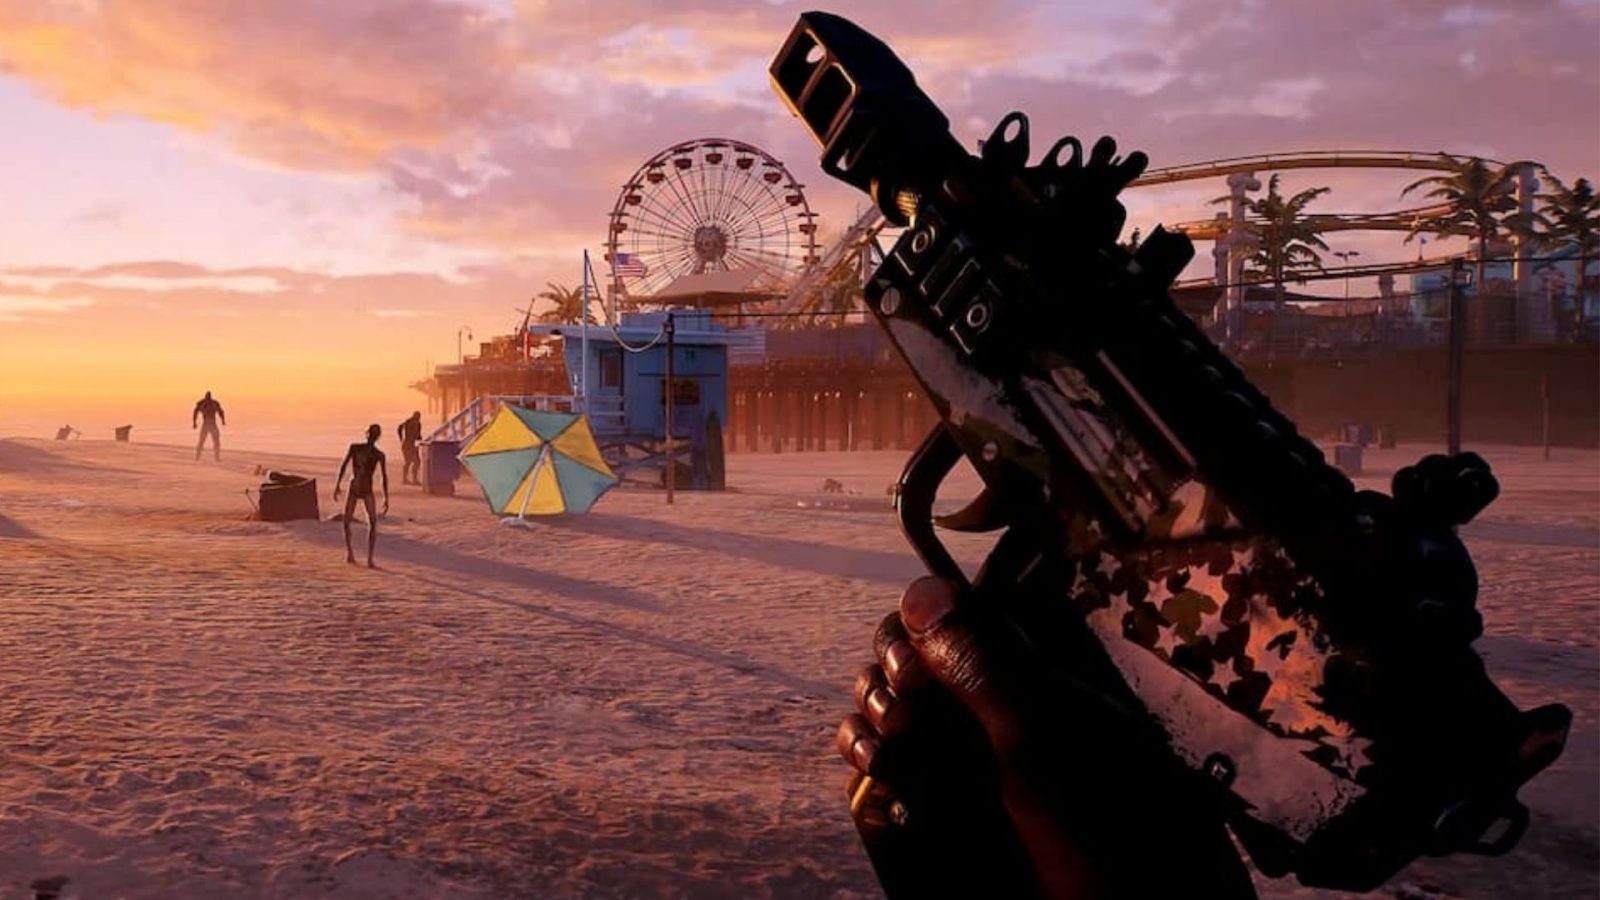 Dead Island 2 Cuenta Compartida Xbox One Xbox Series